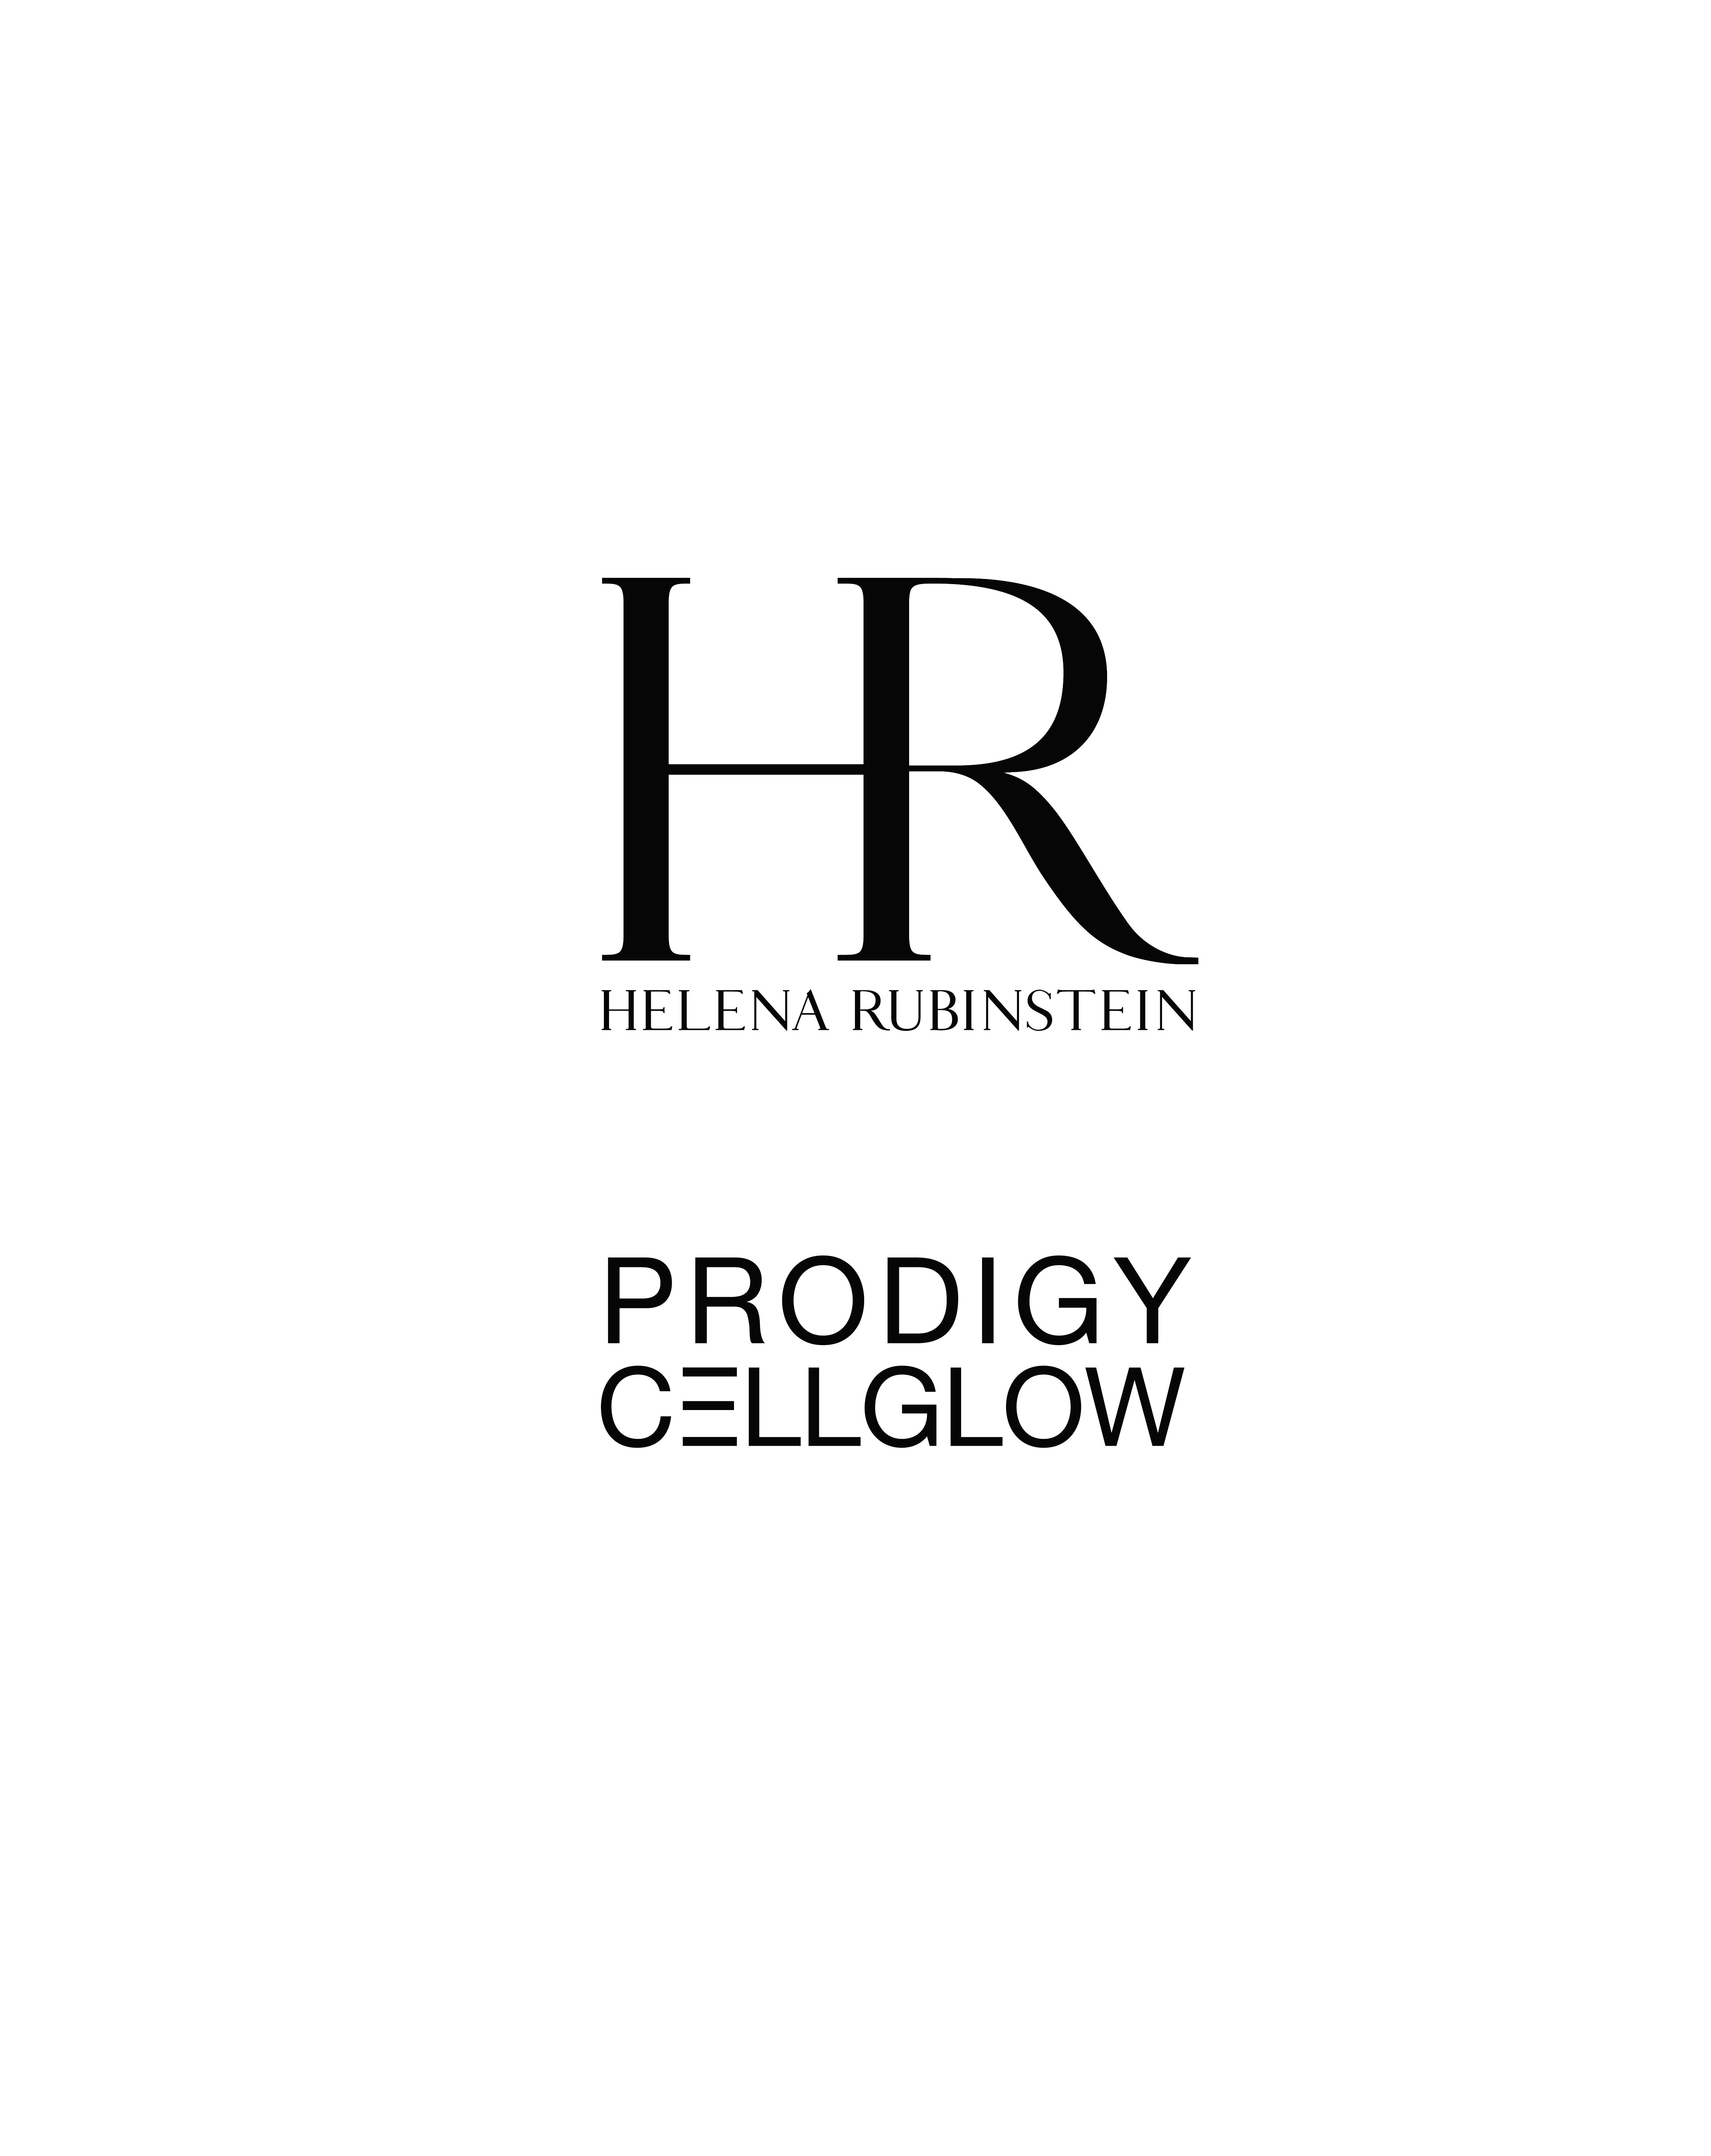  HR HELENA RUBINSTEIN PRODIGY CELL GLOW